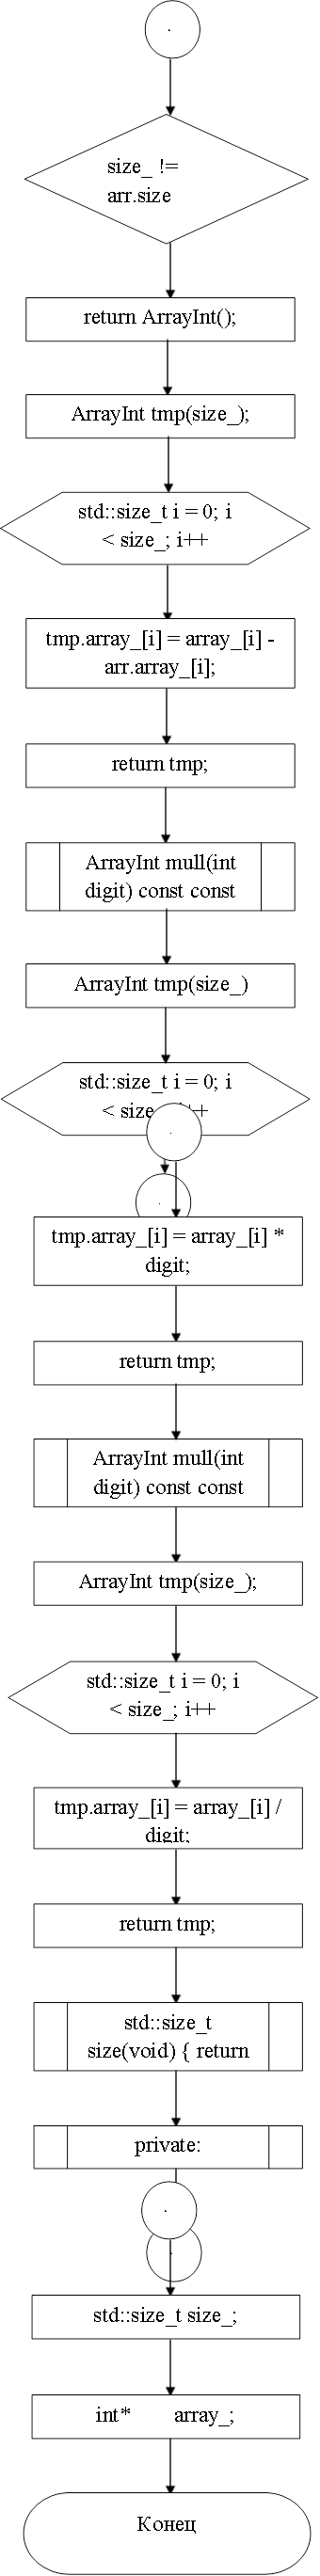 6,size_ != arr.size_,return ArrayInt();,ArrayInt tmp(size_);,std::size_t i = 0; i < size_; i++,tmp.array_[i] = array_[i] - arr.array_[i];,return tmp;,ArrayInt mull(int digit) const const,ArrayInt tmp(size_),std::size_t i = 0; i < size_; i++,7,7,tmp.array_[i] = array_[i] * digit;,return tmp;,ArrayInt mull(int digit) const const,ArrayInt tmp(size_);,std::size_t i = 0; i < size_; i++,tmp.array_[i] = array_[i] / digit;,return tmp;,std::size_t size(void) { return size_; }  ,private:,8,8,std::size_t size_;,int*        array_;,Конец